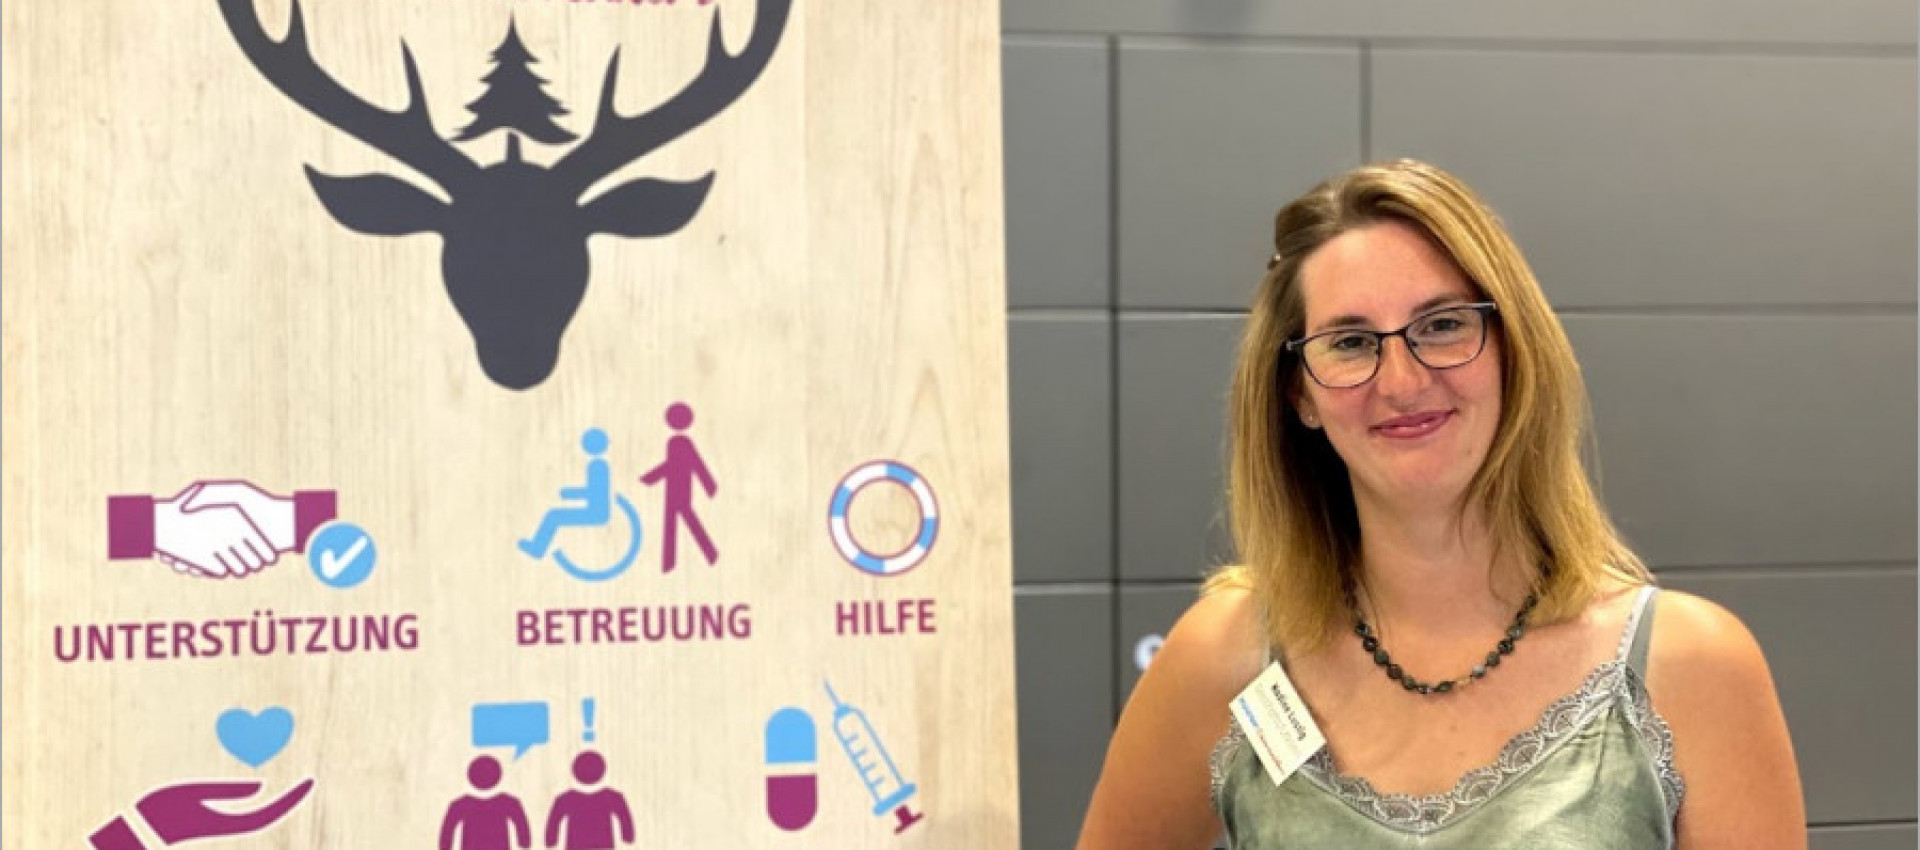 #RegioGespräch mit Nadine Lustig, Pflegeteam Schwarzwaldherz